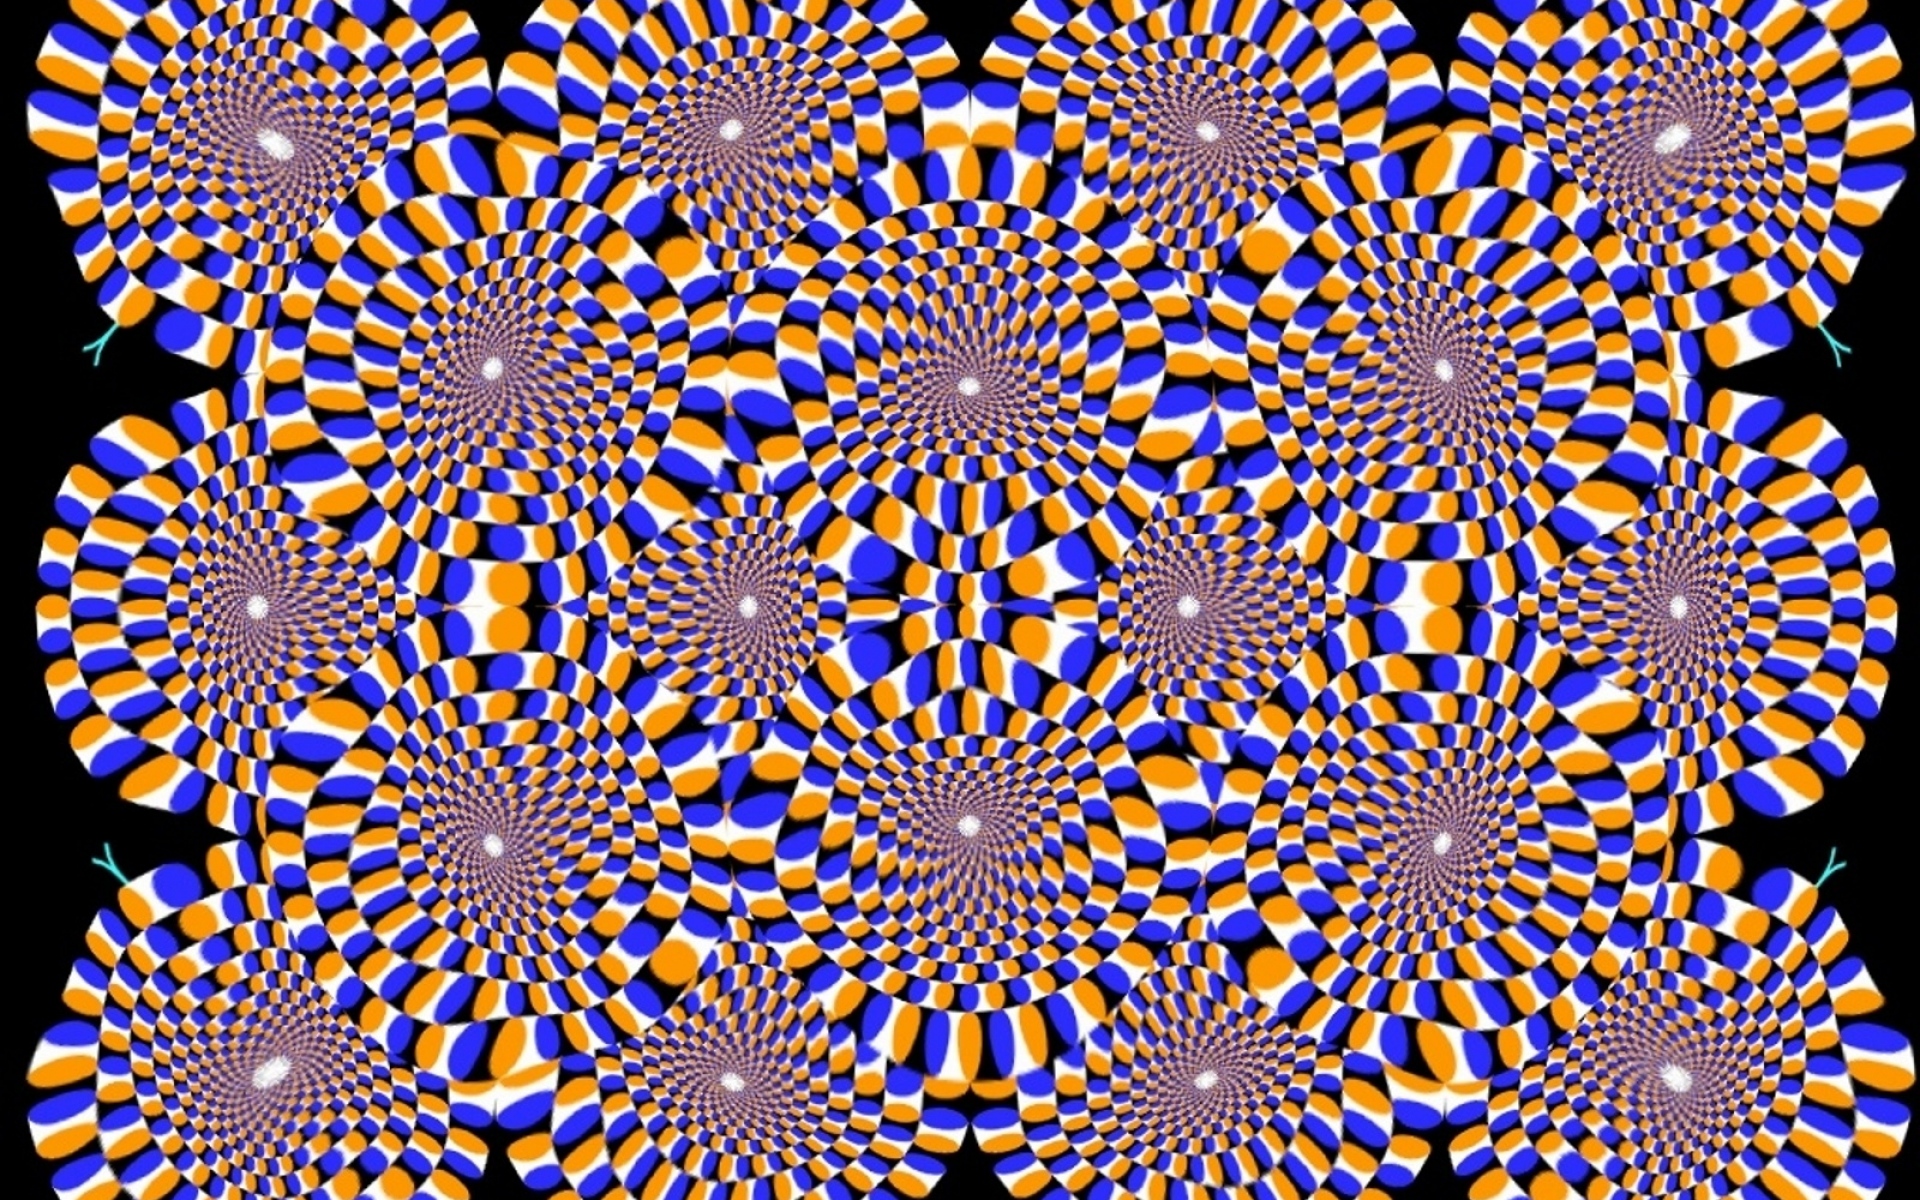 Почему глаза двигаются. Акиоши Китаока иллюзия. Иллюзия Акиоши Китаока вращающийся змей. Оптические иллюзии стереокартинки. Оптические иллюзии для глаз стереограммы.